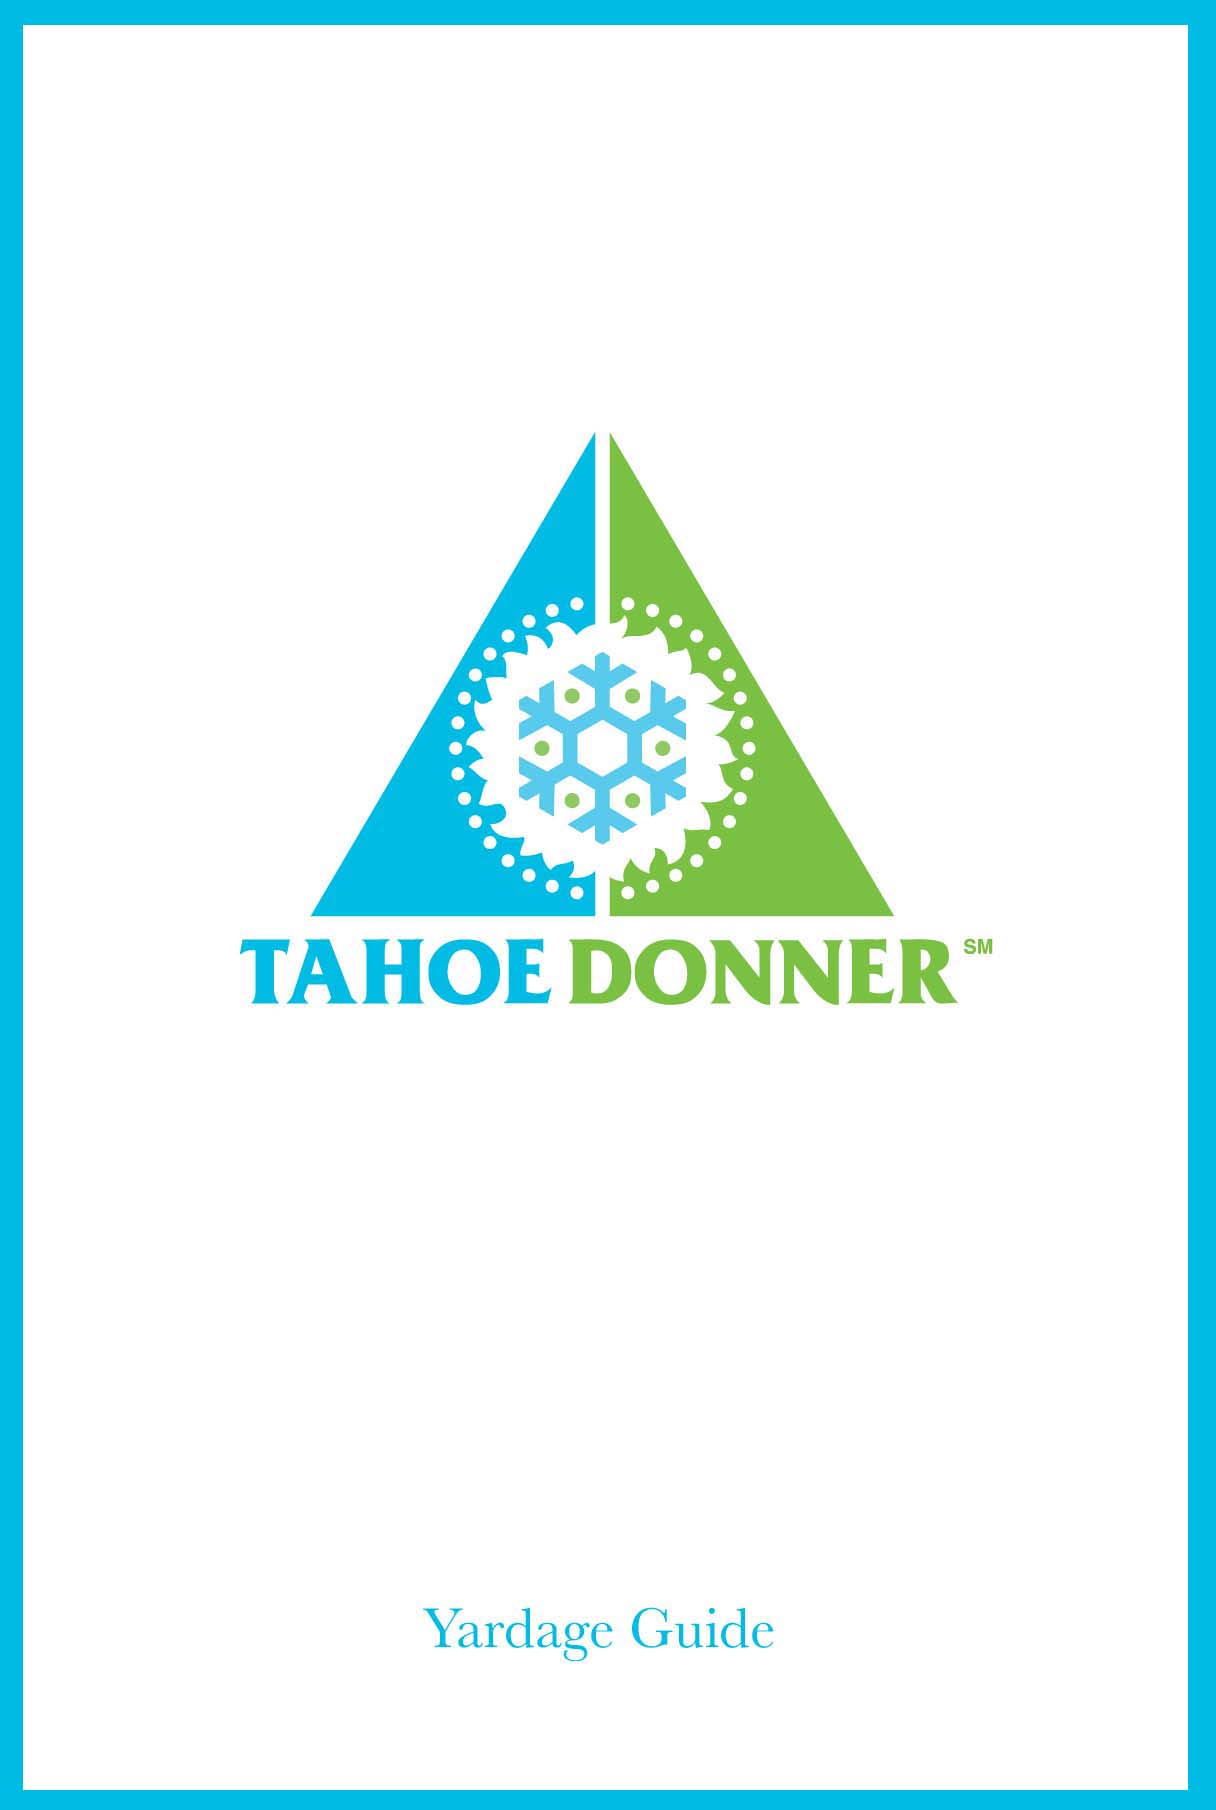 Tahoe Donner GC